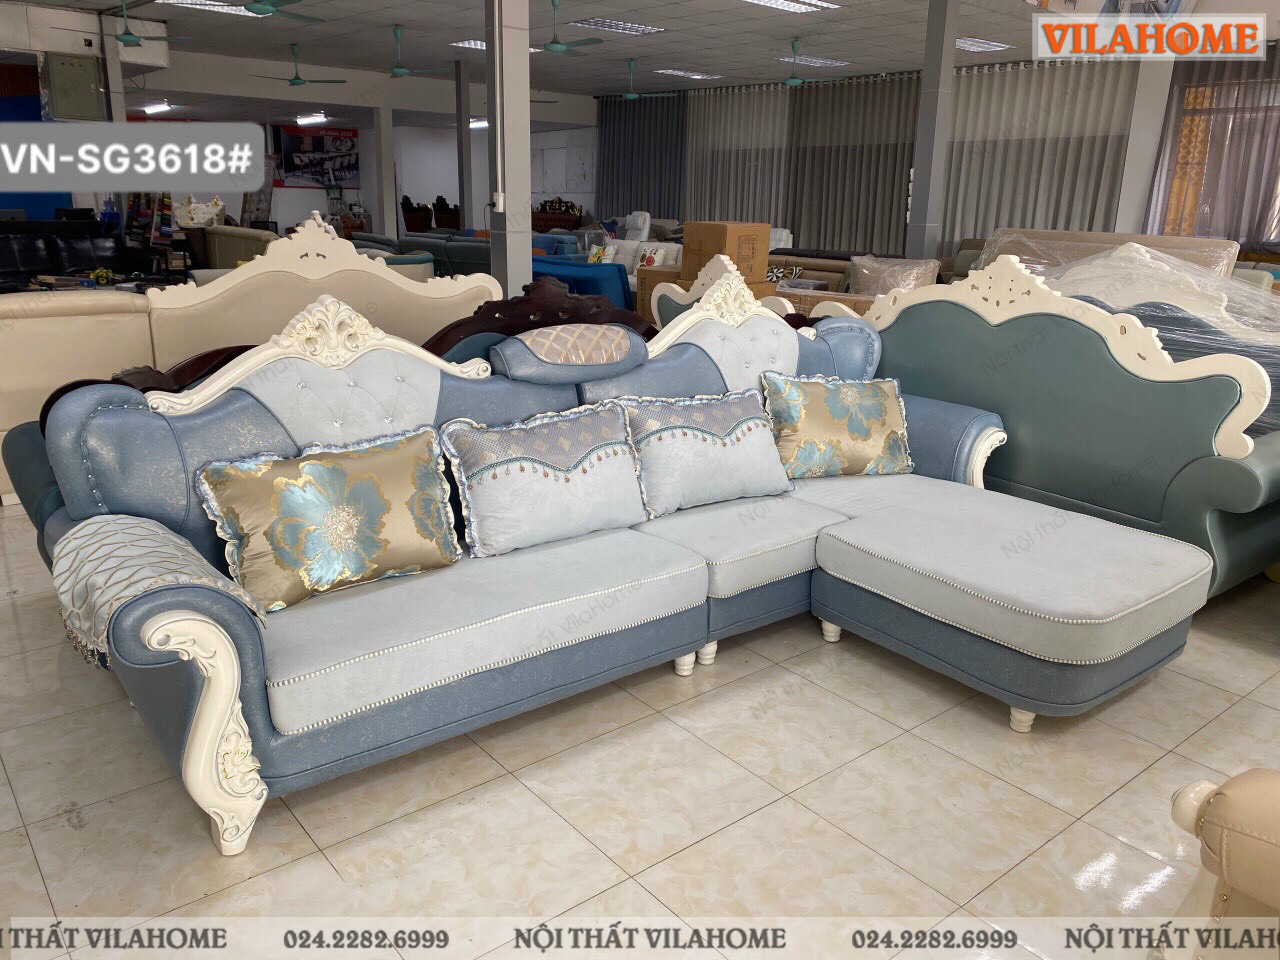 VilaHome cung cấp các mẫu sofa tại Hải Phòng và toàn quốc